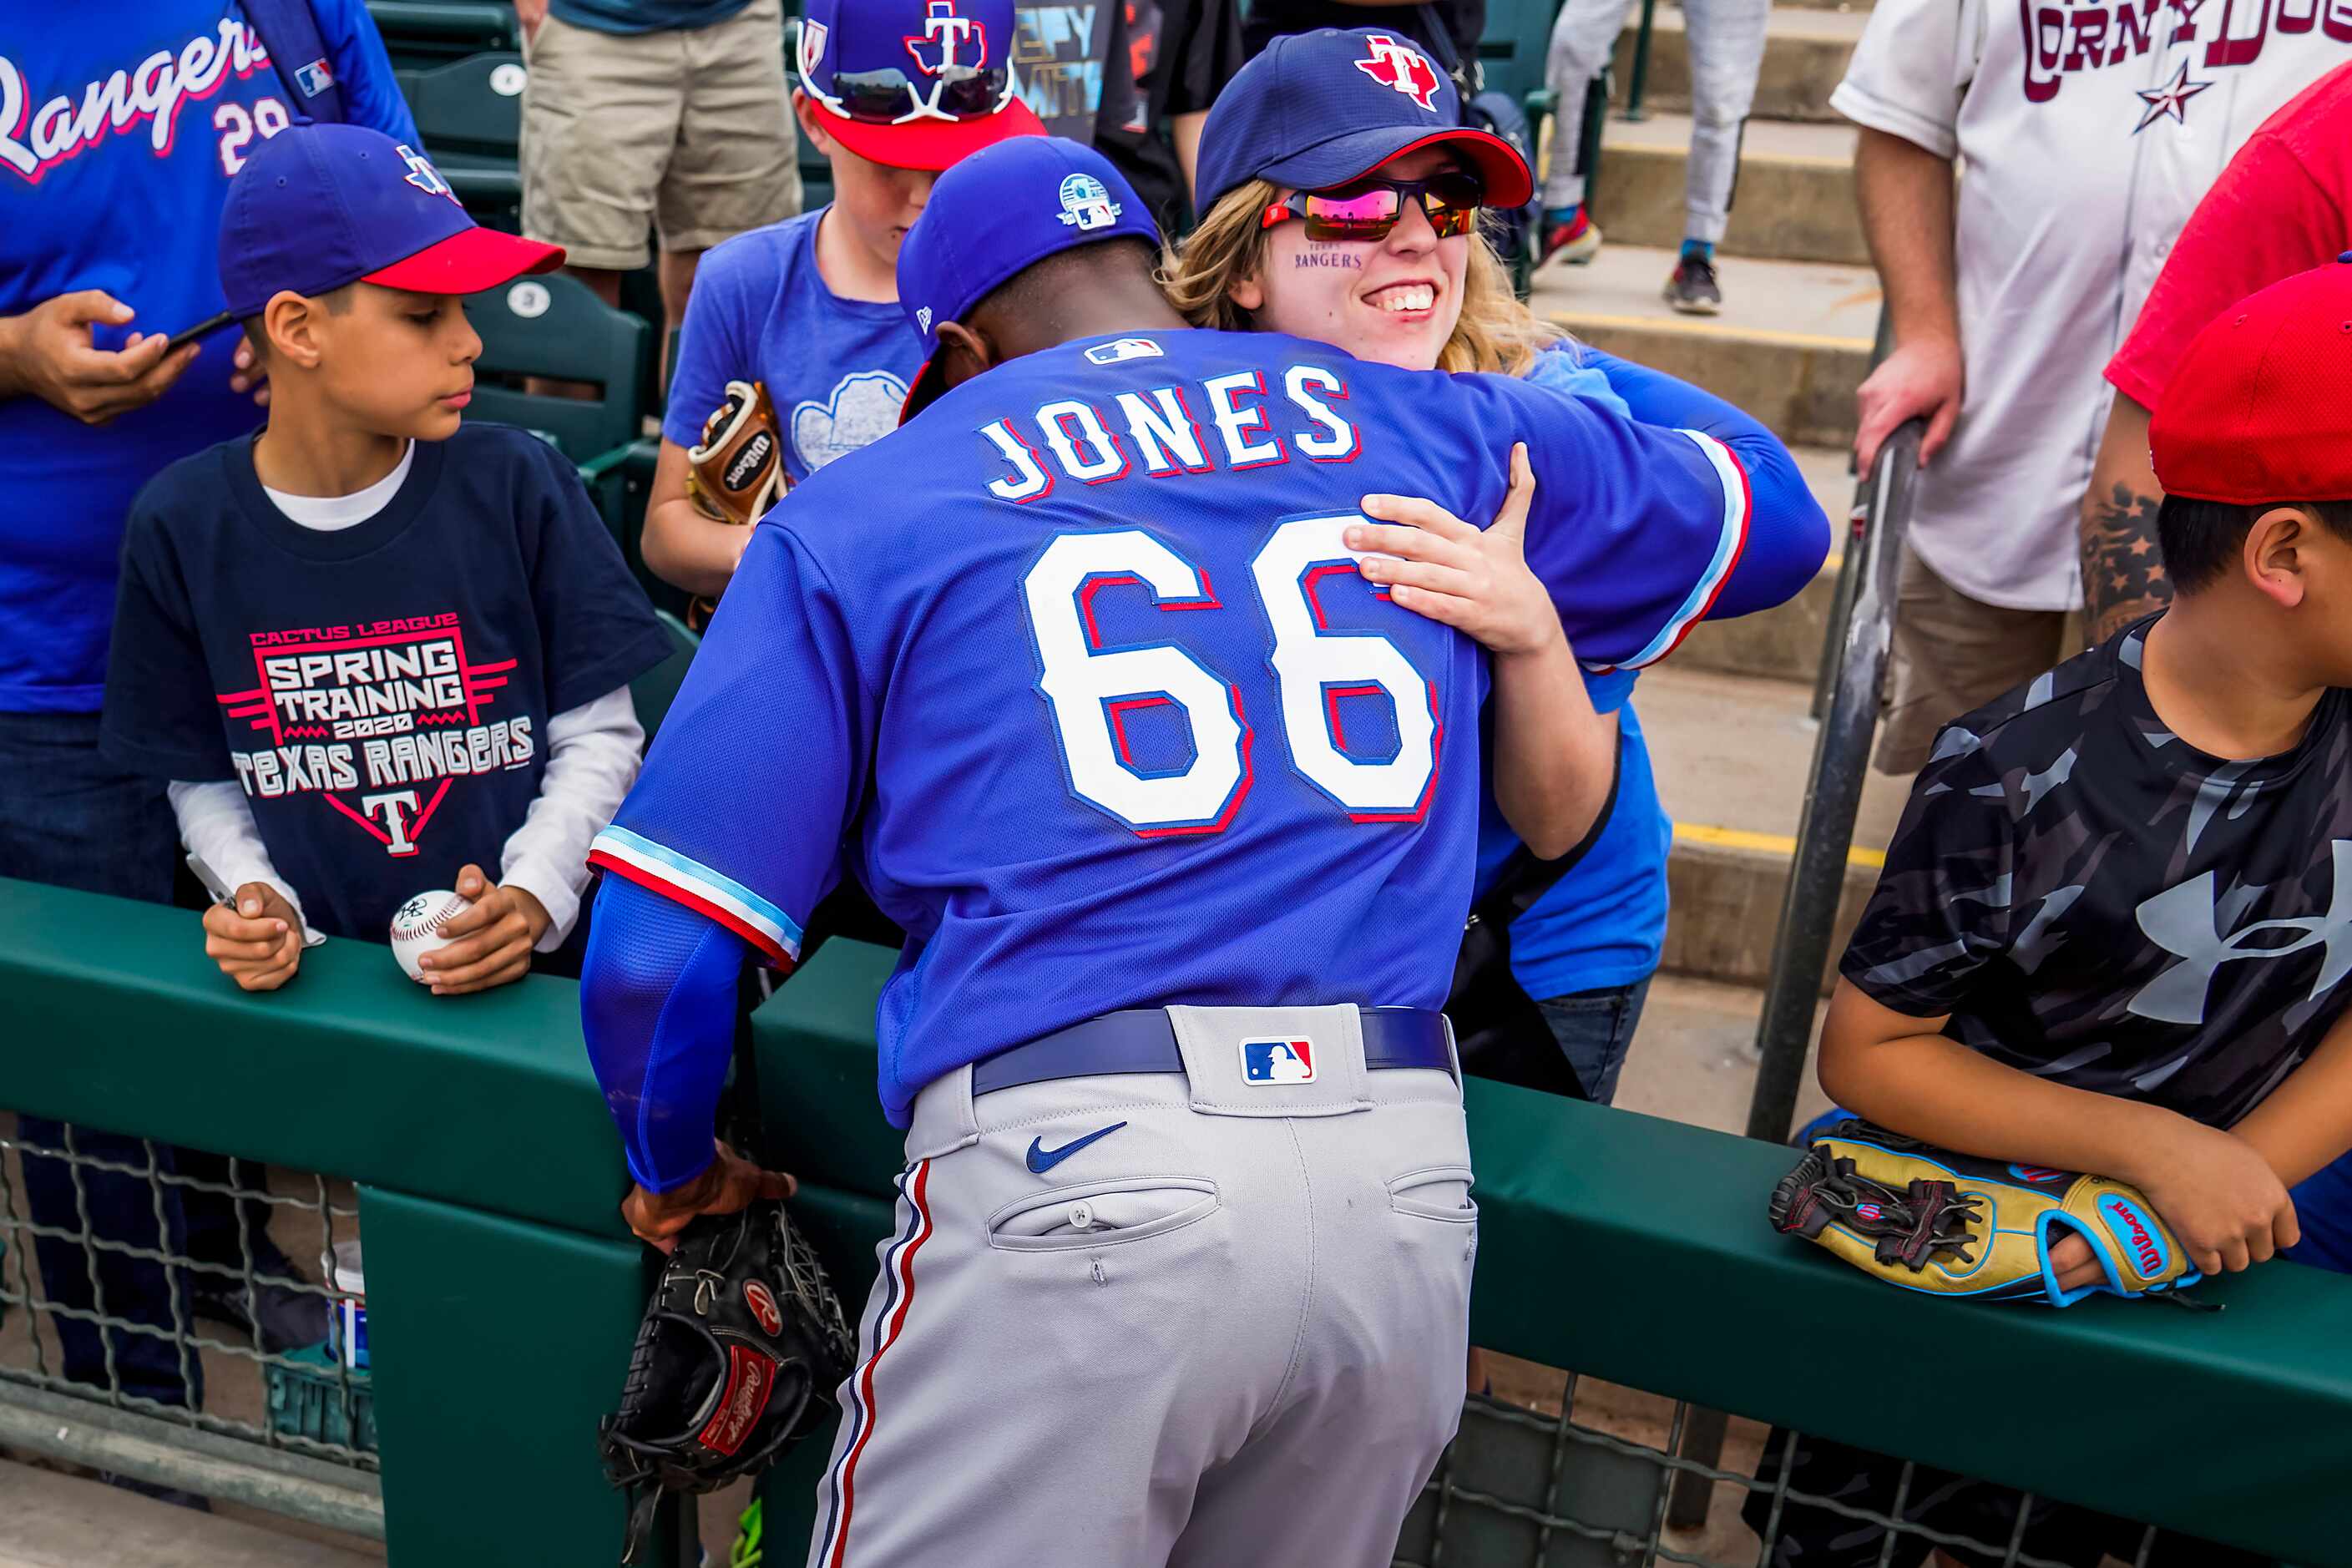 Texas Rangers pitcher James Jones hugs Rangers fan Amber McDonald of Coppell, Texas, after a...